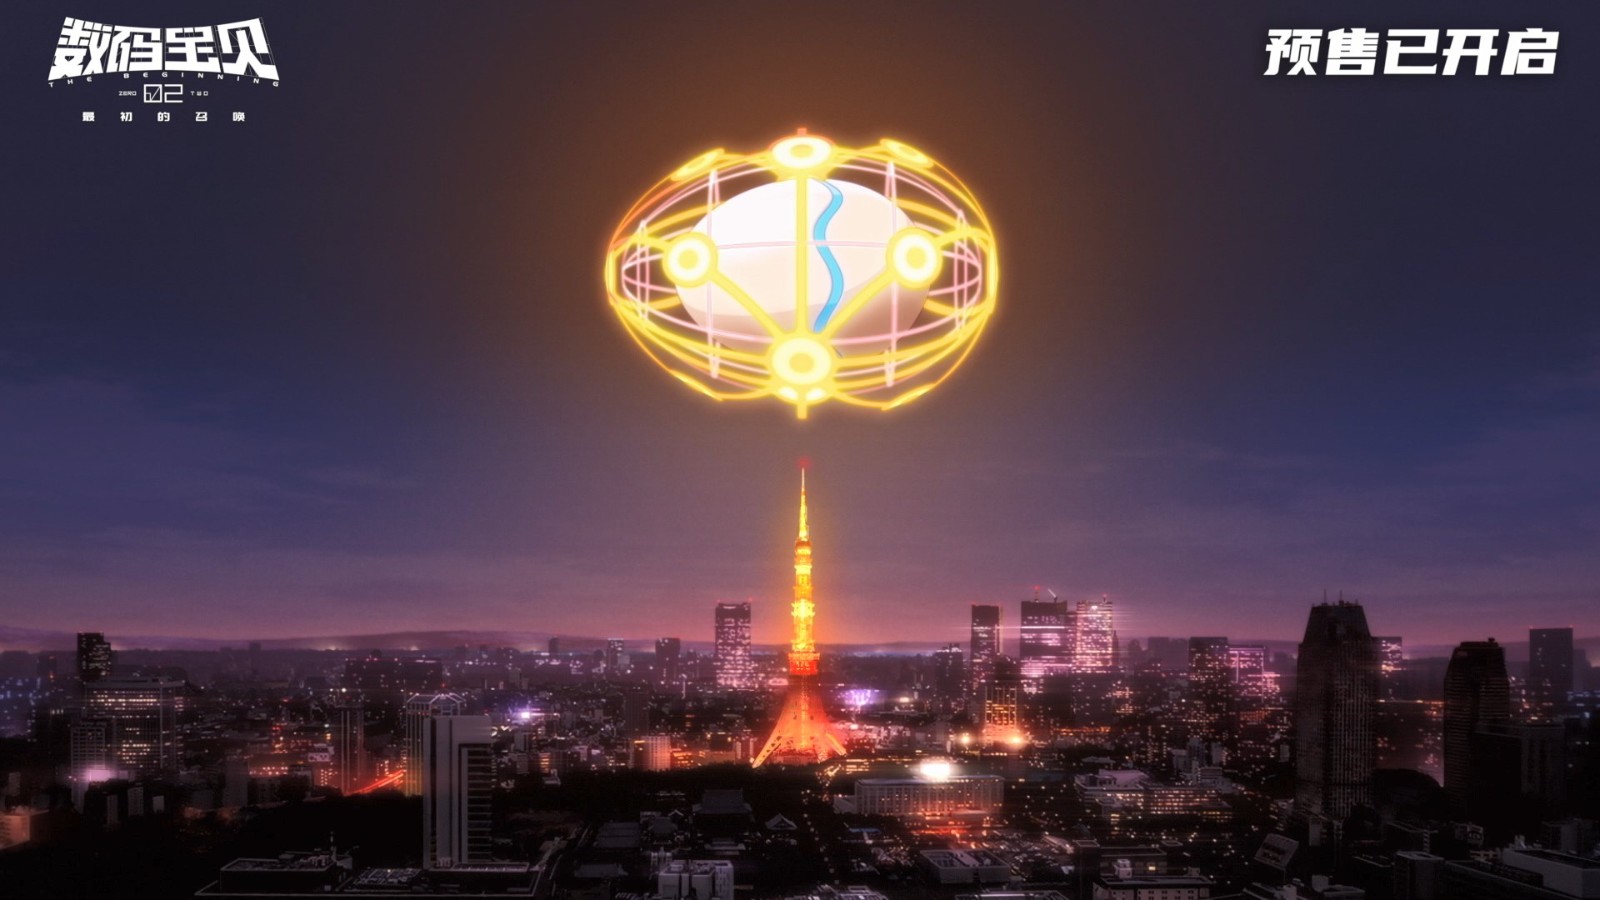 《数码宝贝02最初的召唤》发布终极预告 4月20日上映